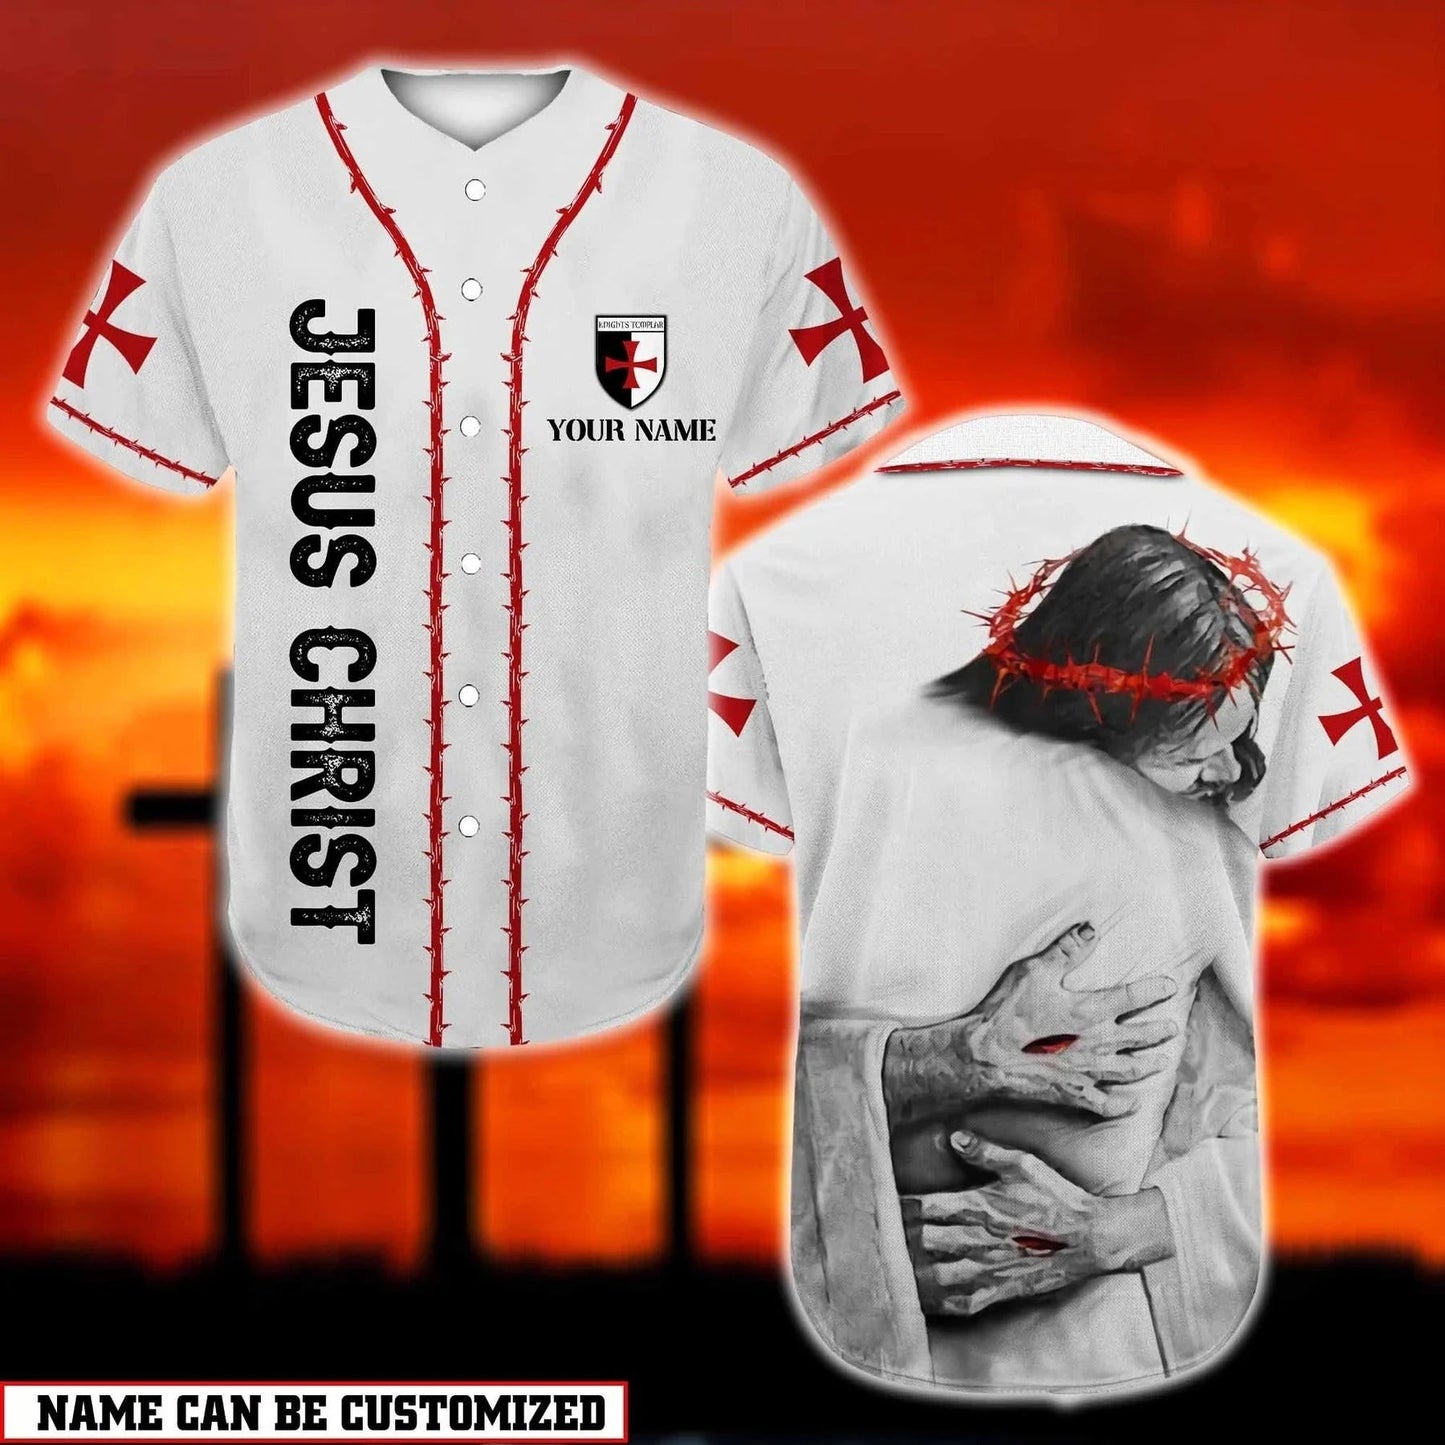 God Hug Baseball Jersey - God Is Love Custom Printed 3D Baseball Jersey Shirt For Men Women